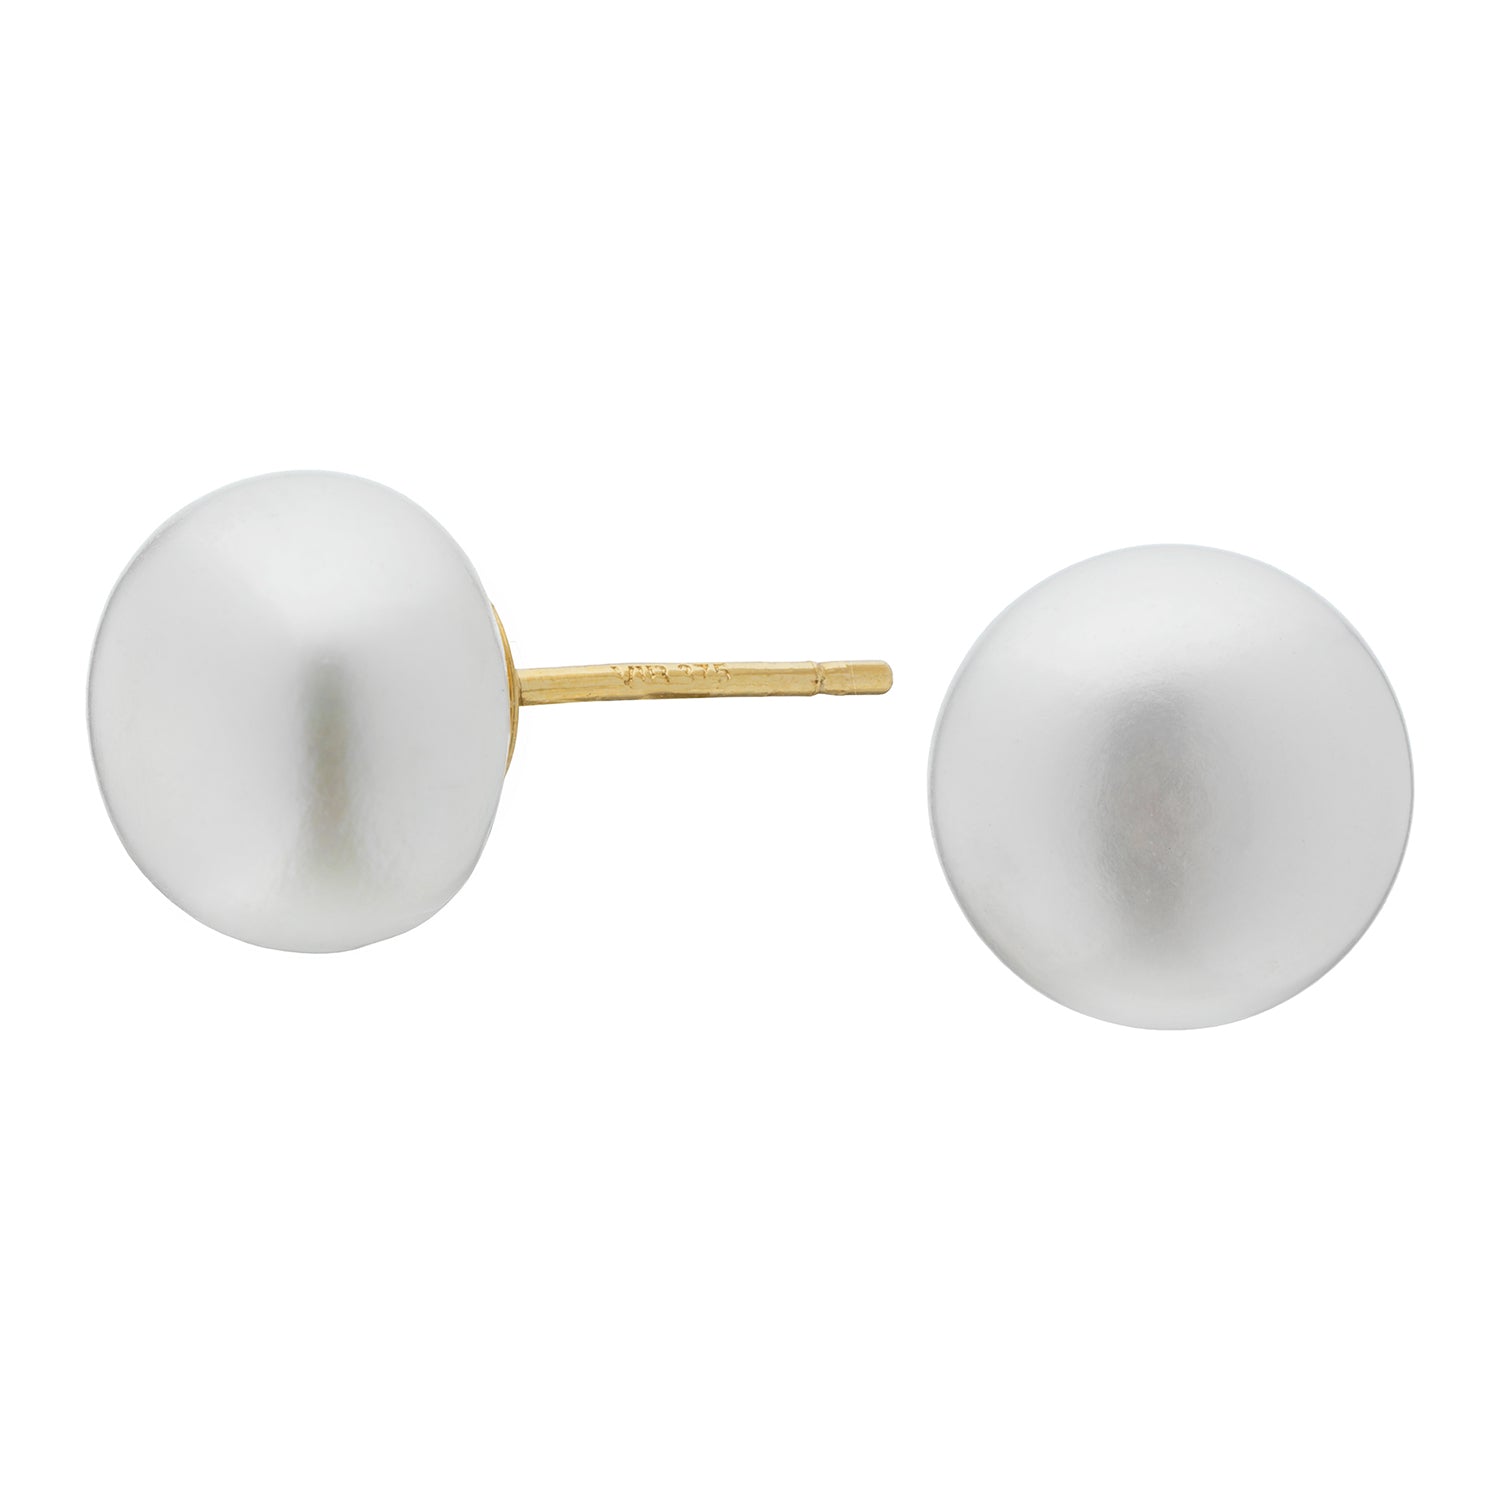 Billede af Vibholm Guld - Button perle ørestikker 9-9,5 mm 9 kt.